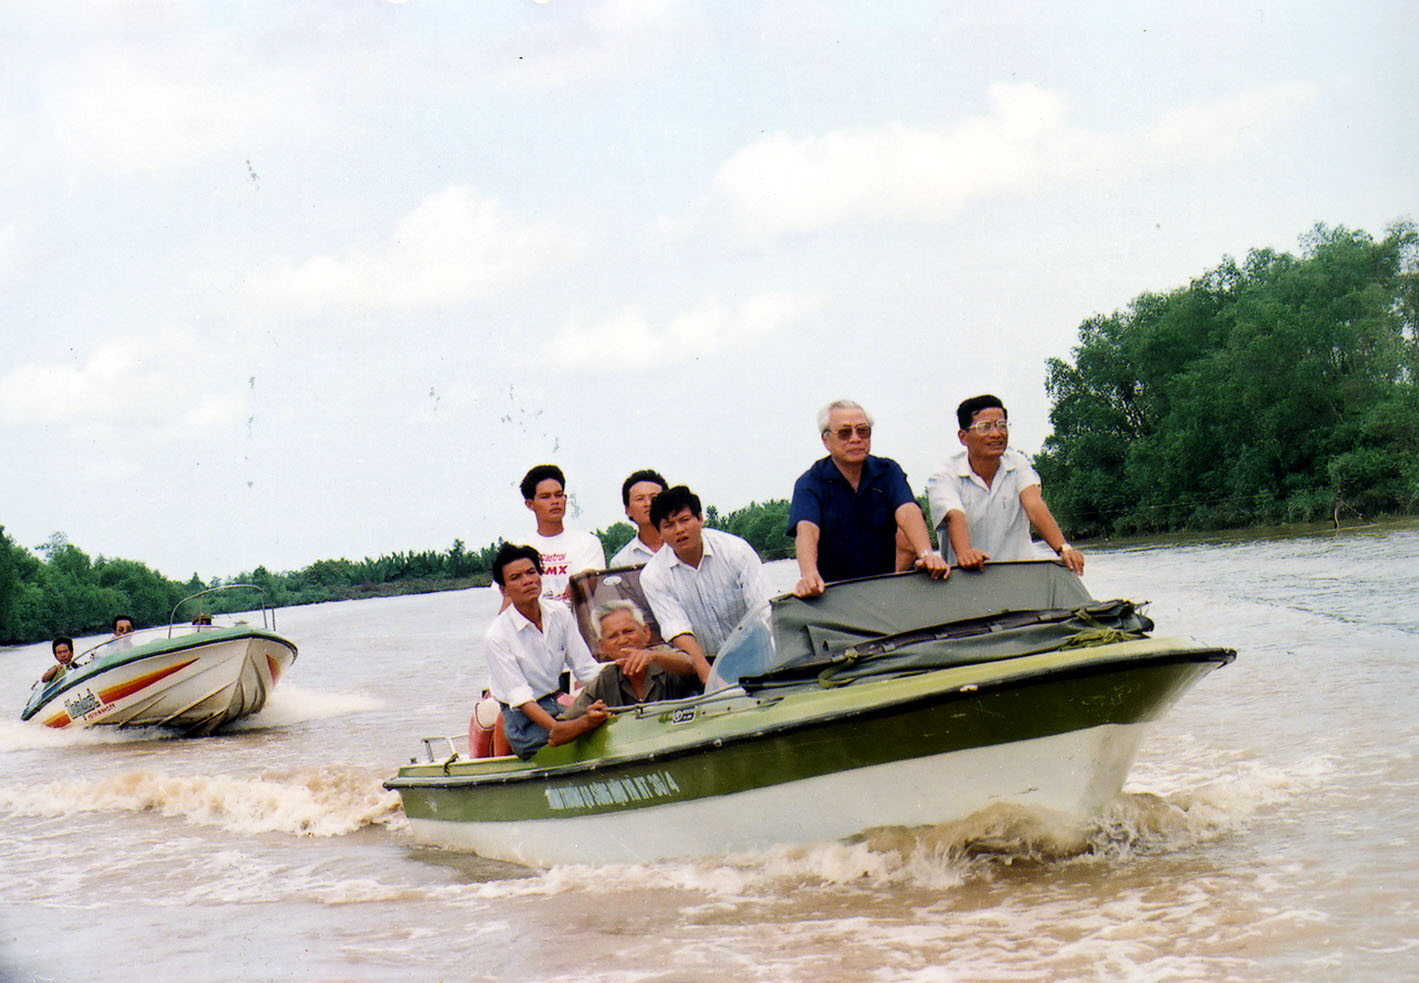 Năm 1996, Thủ tướng Võ Văn Kiệt khảo sát trước khi đào kênh T5 (ở An Giang) với mục đích thoát lũ ra biển Tây. Năm 2009, kênh T5 được đặt tên là Võ Văn Kiệt.